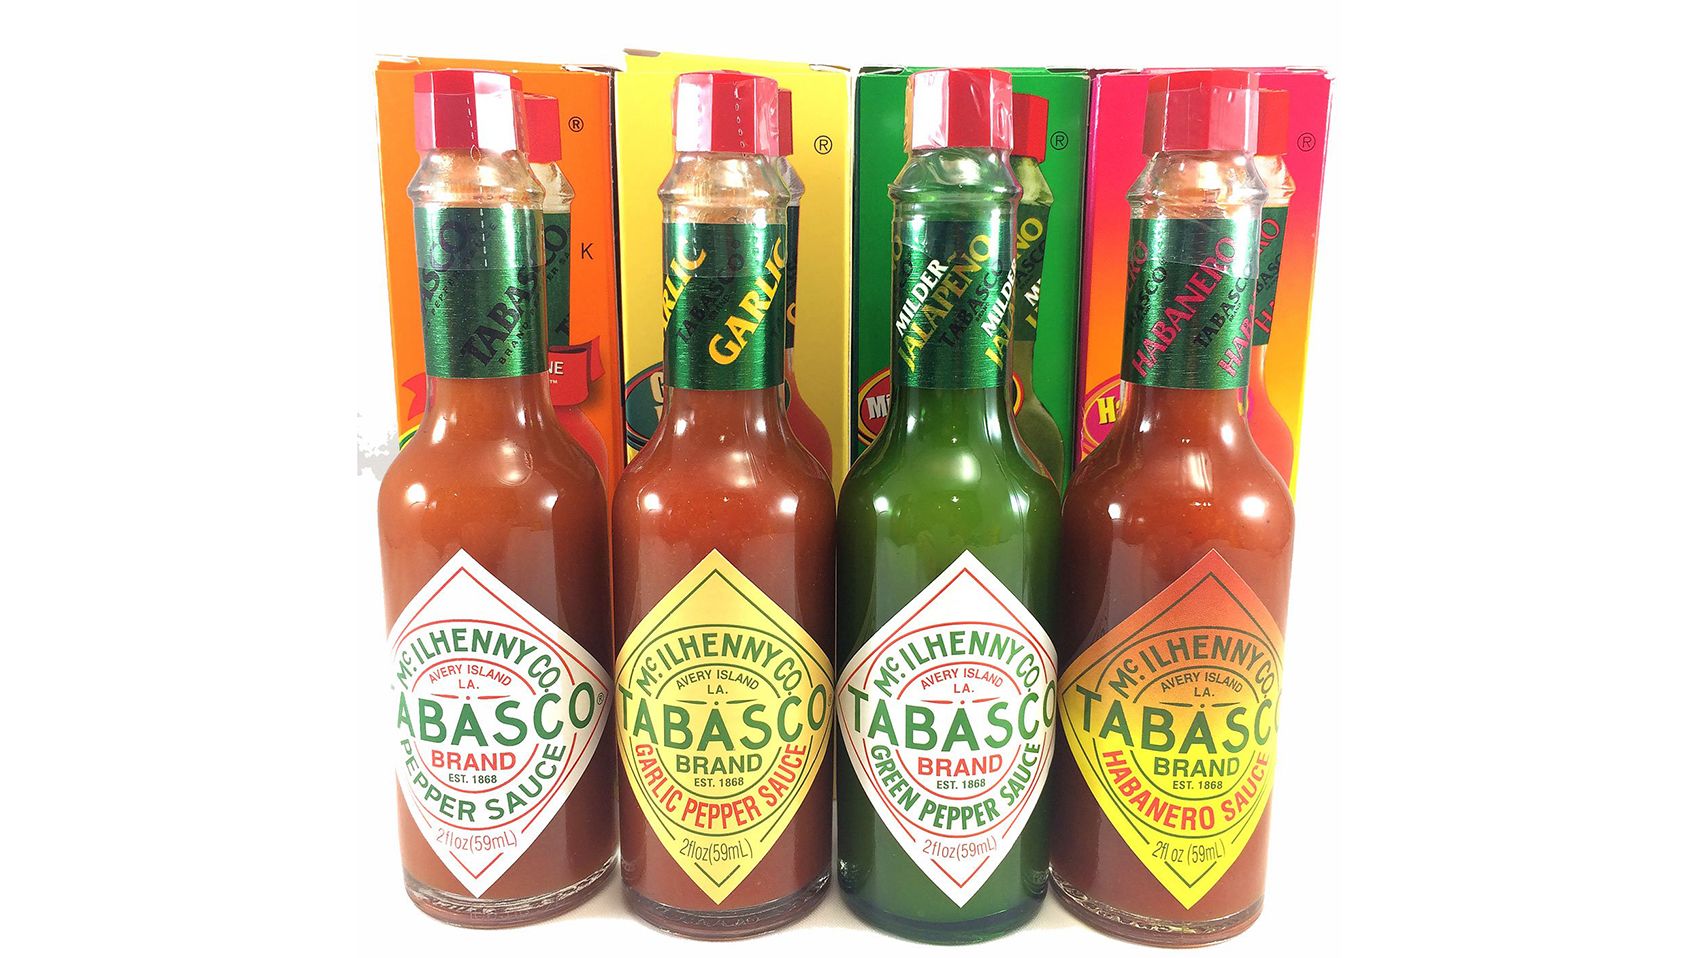 Tabasco Classic Hot Sauce, 12 oz.